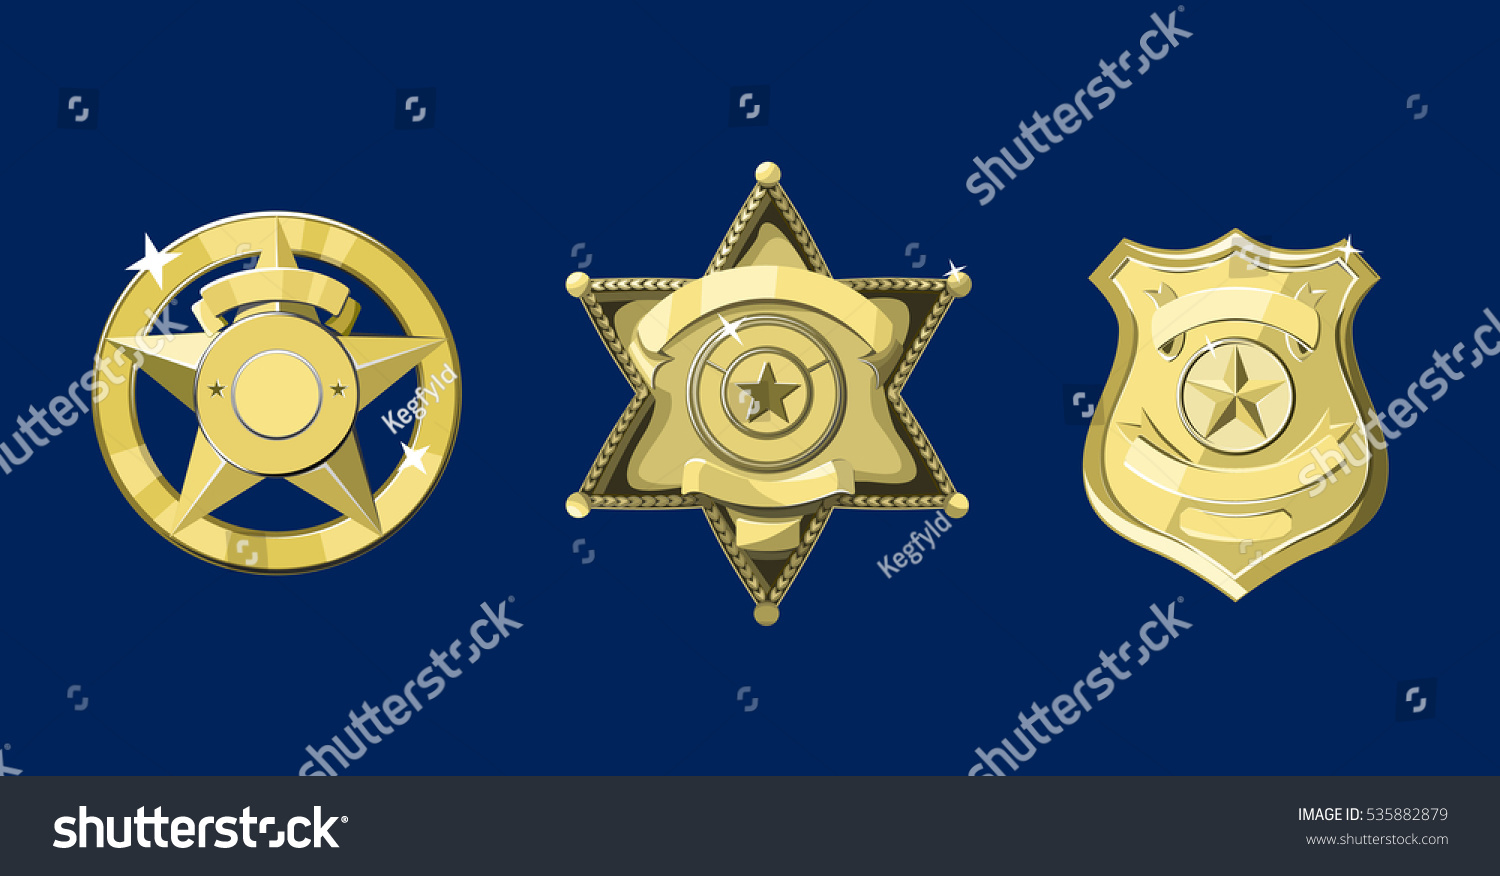 SVG of Golden police and sheriff badges on dark blue background svg